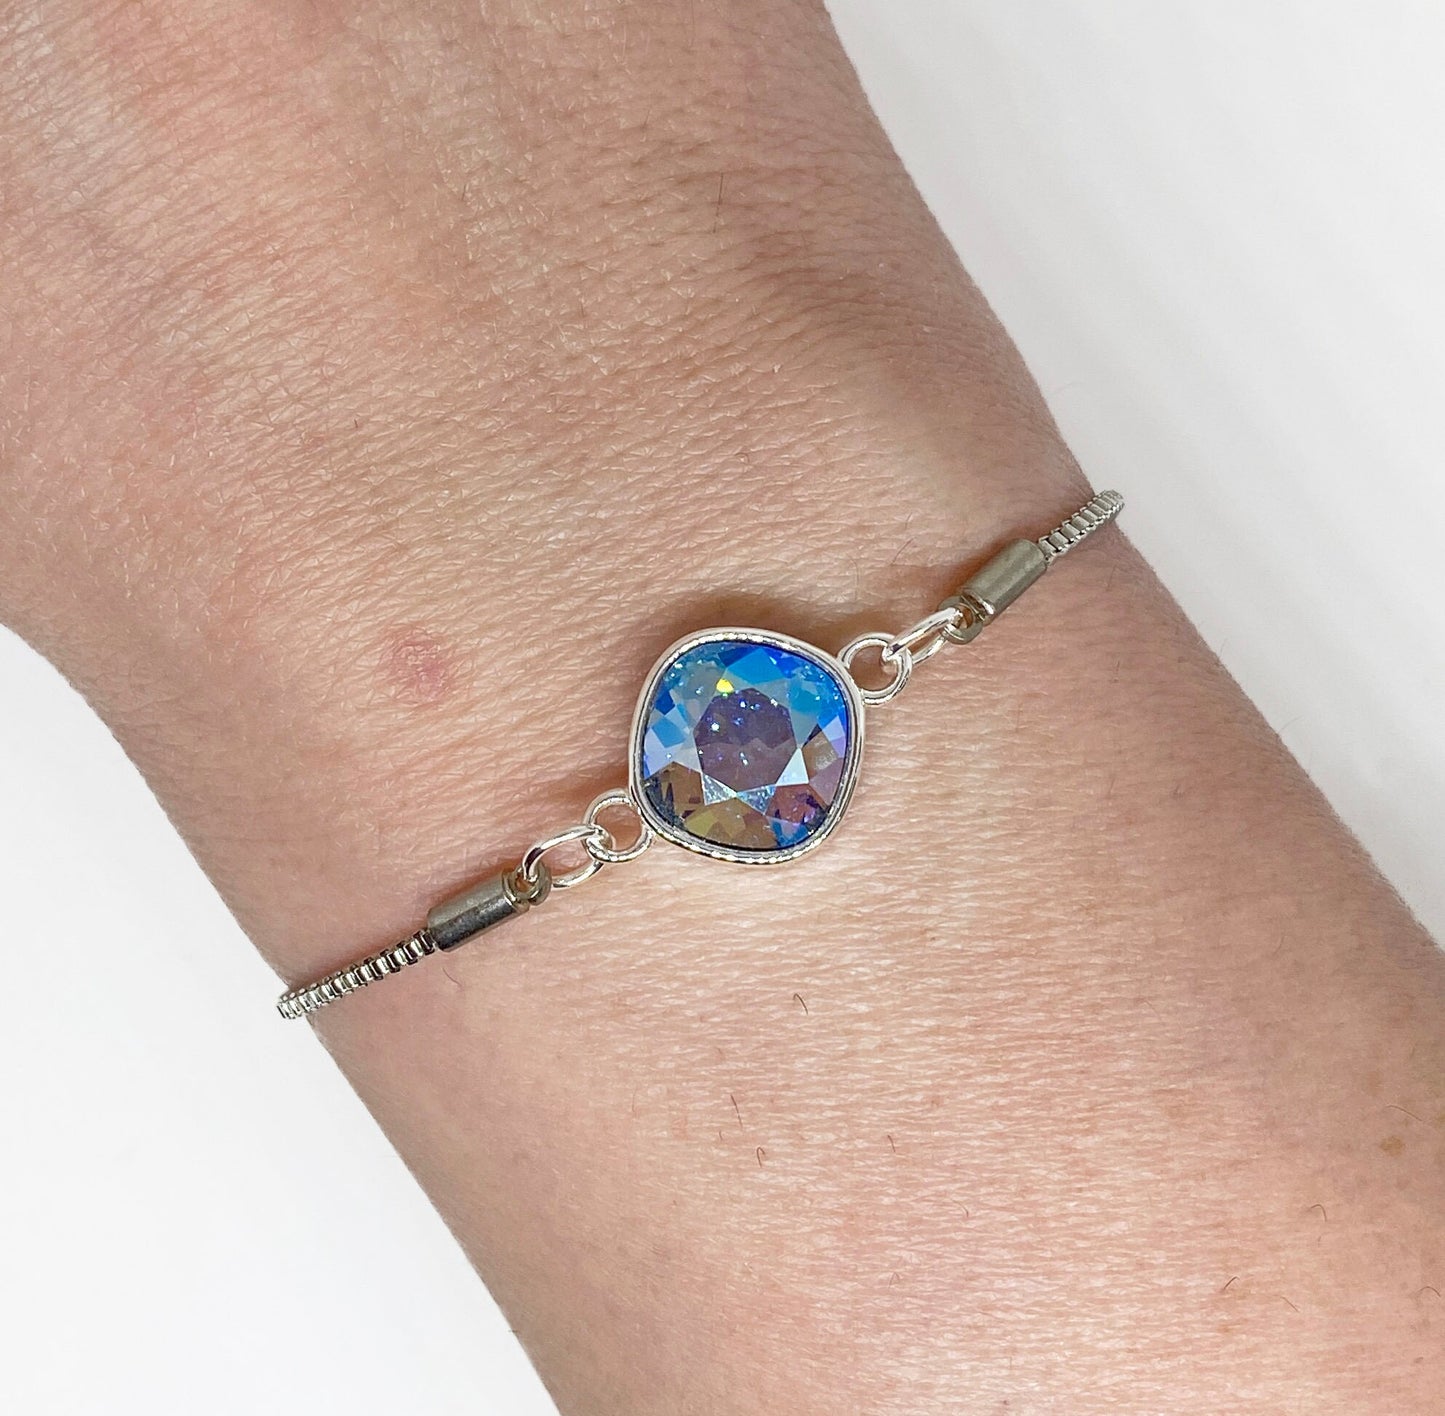 Swarovski 10mm Cushion Crystal Bracelet in Light Sapphire Shimmer on Silver Adjustable Bracelet